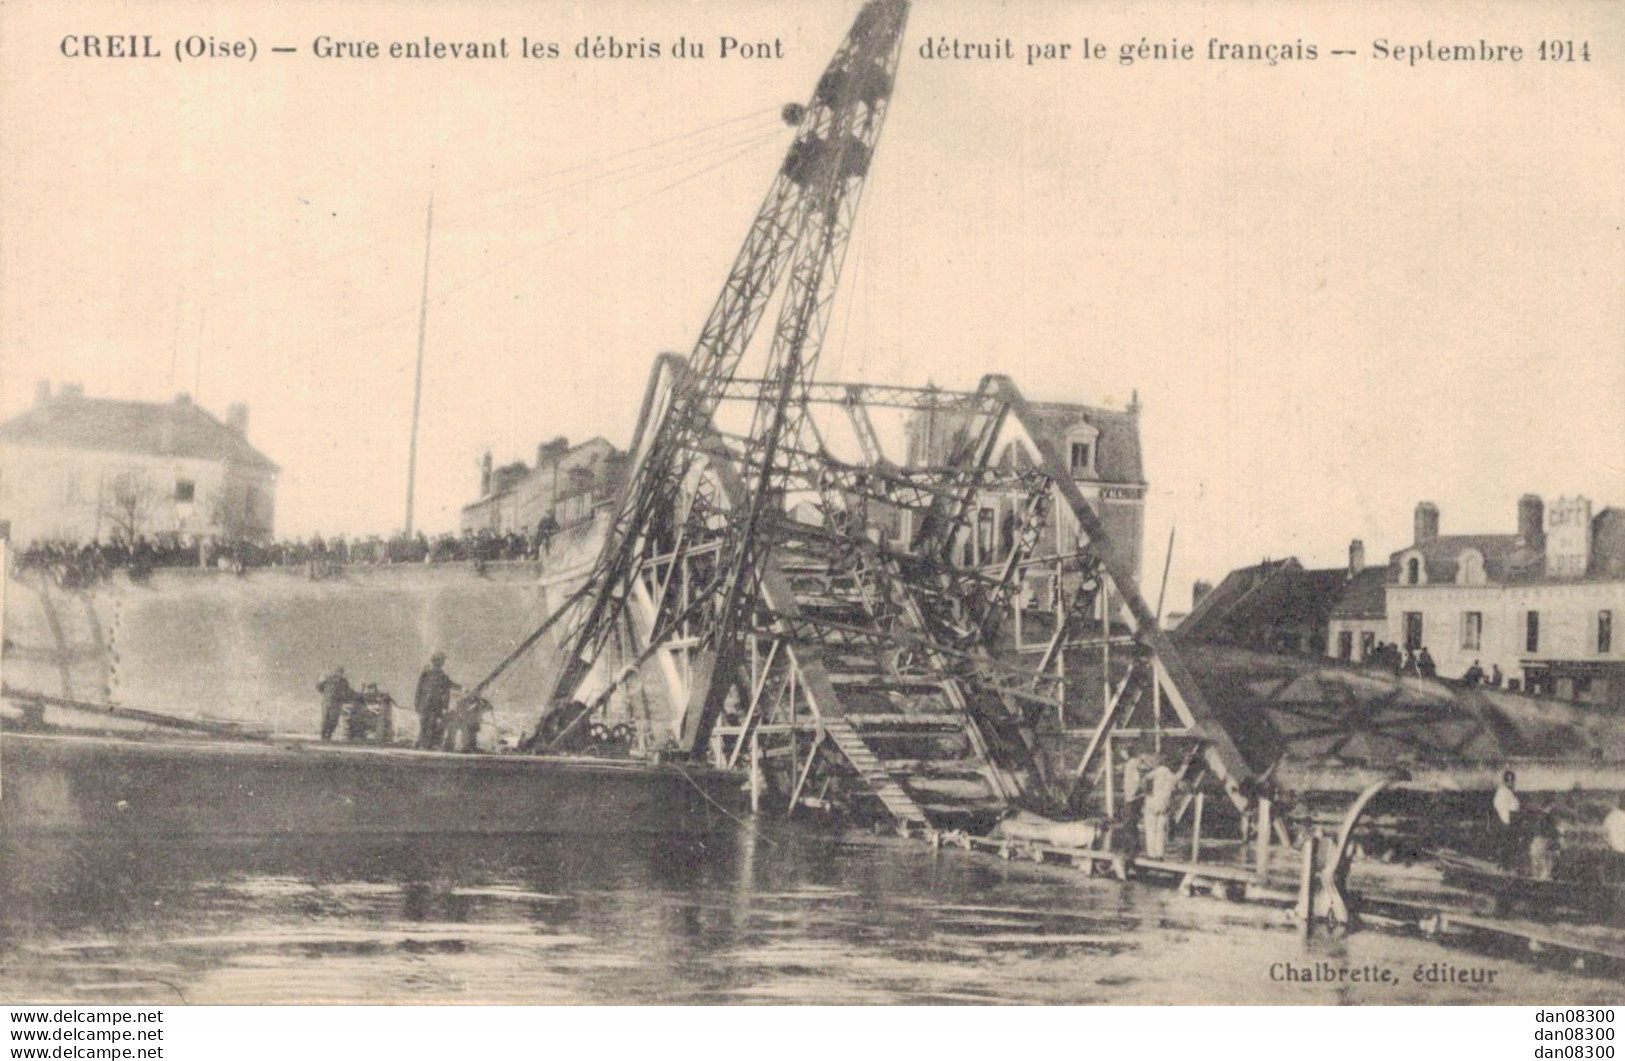 60 CREIL GRUE ENLEVANT LES DEBRIS DU PONT DETRUIT PAR LE GENIE FRANCAIS SEPTEMBRE 1914 - War 1914-18